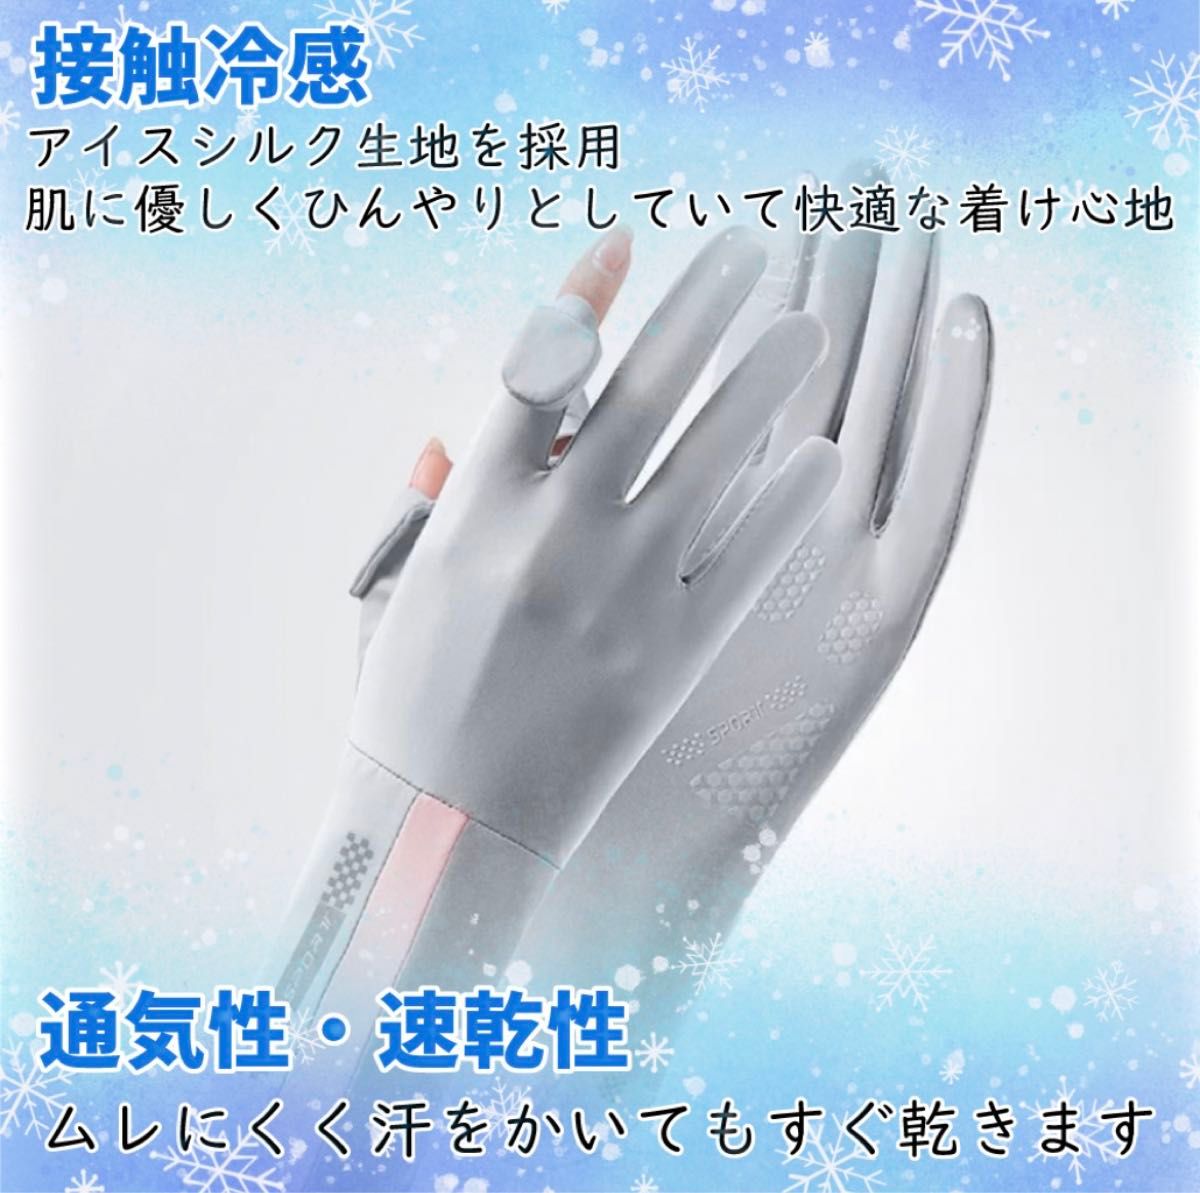 【ブラック】UVグローブ 手袋 レディース アームカバー UVカット 日焼け止め 夏 接触冷感 通気性 速乾 UV対策 スマホ操作